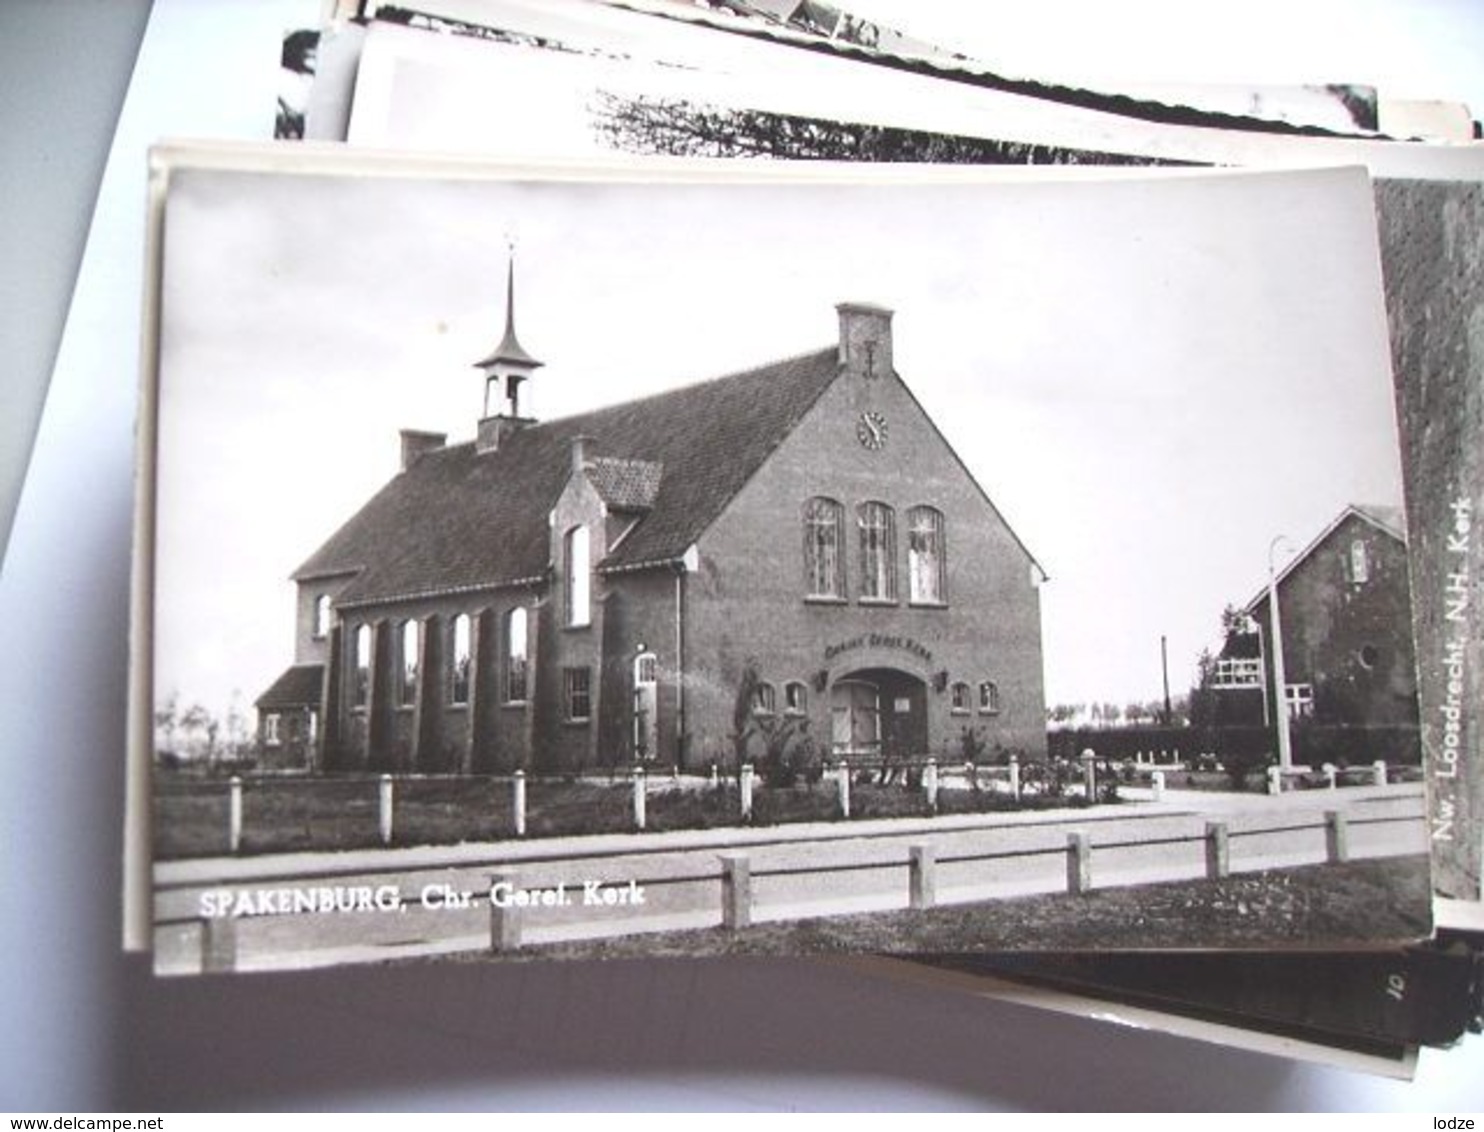 Nederland Holland Pays Bas Spakenburg Met Chr. Gereformeerde Kerk - Spakenburg